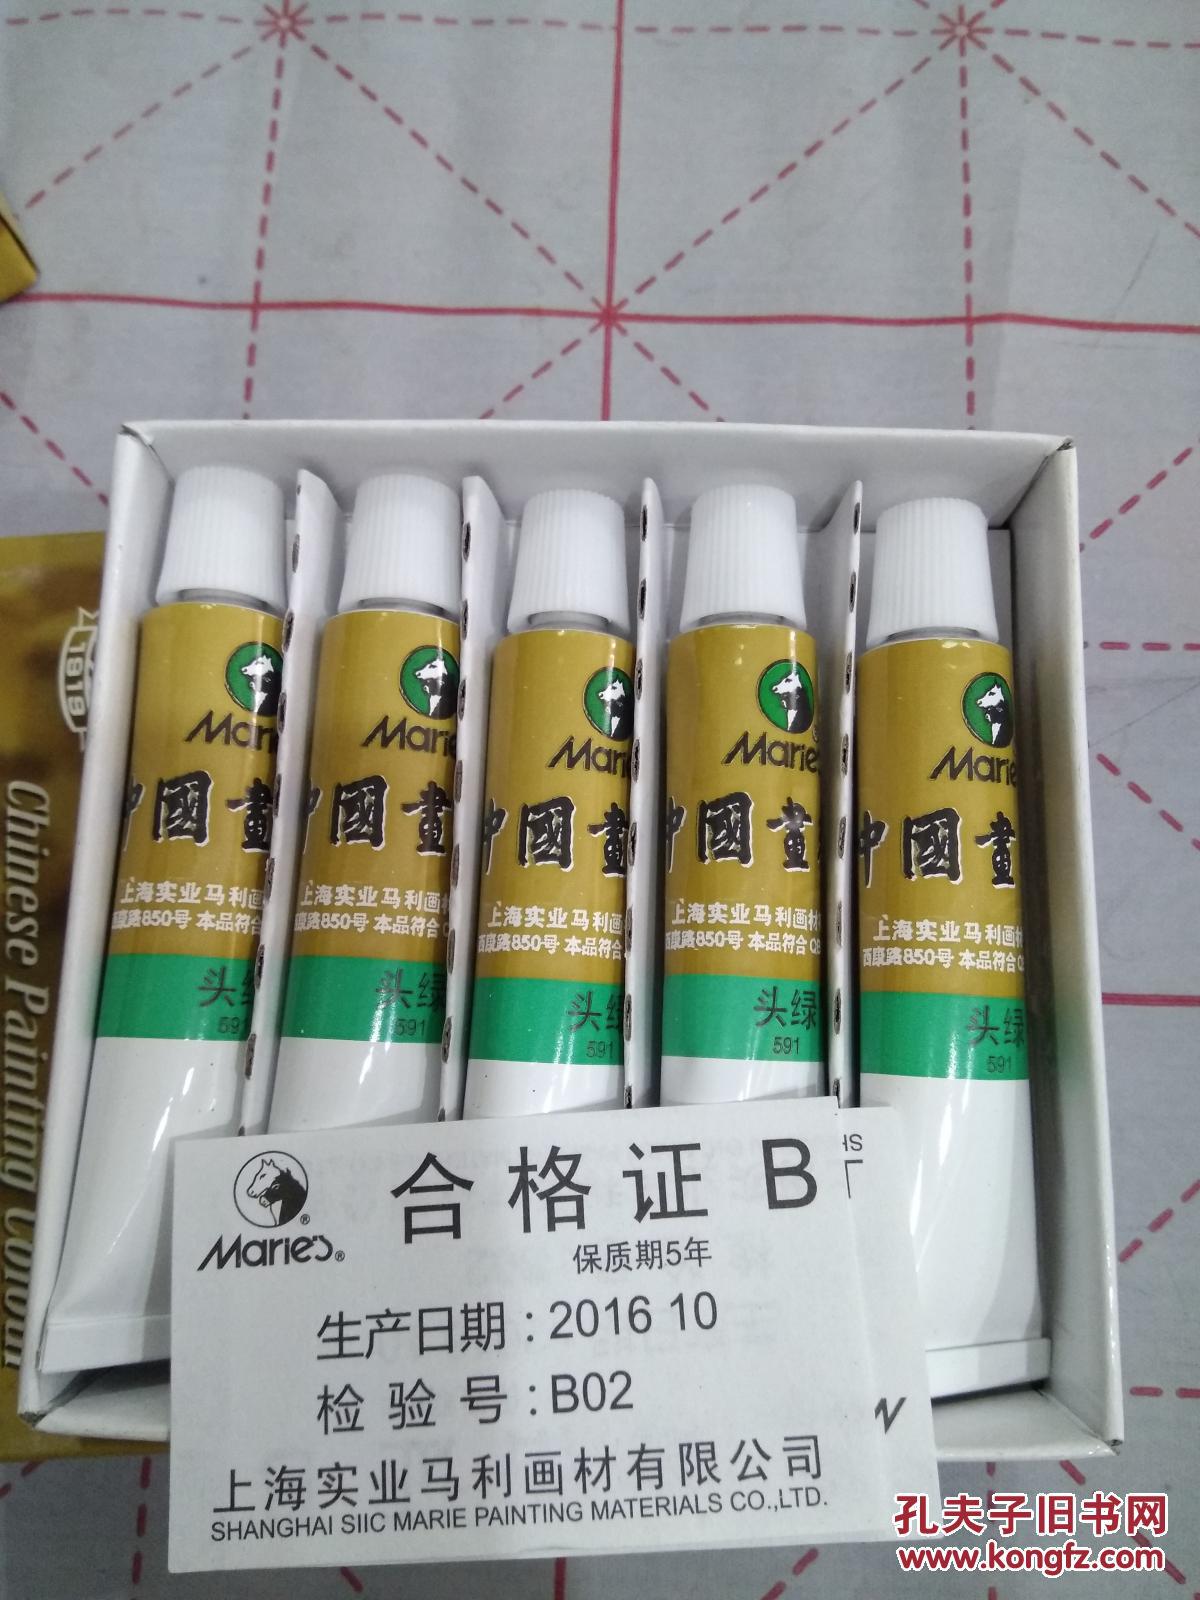 正品中国画颜料,马利牌,头绿(一盒5支)上海实业马利画材有限公司